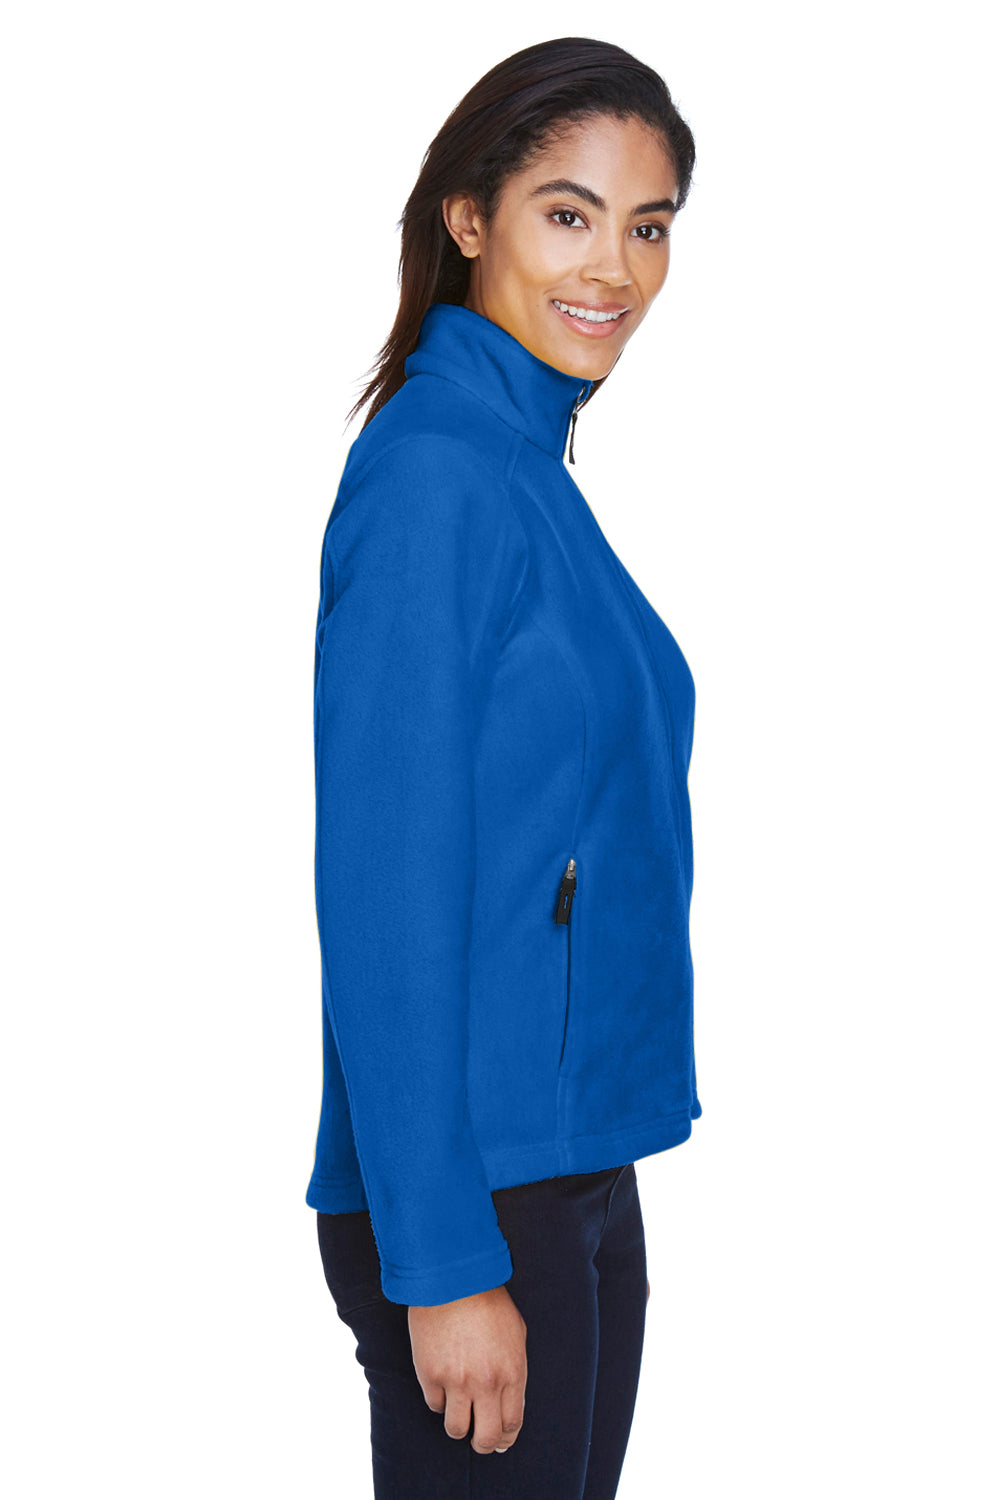 Core 365 78190 Womens Journey Full Zip Fleece Jacket Royal Blue Side